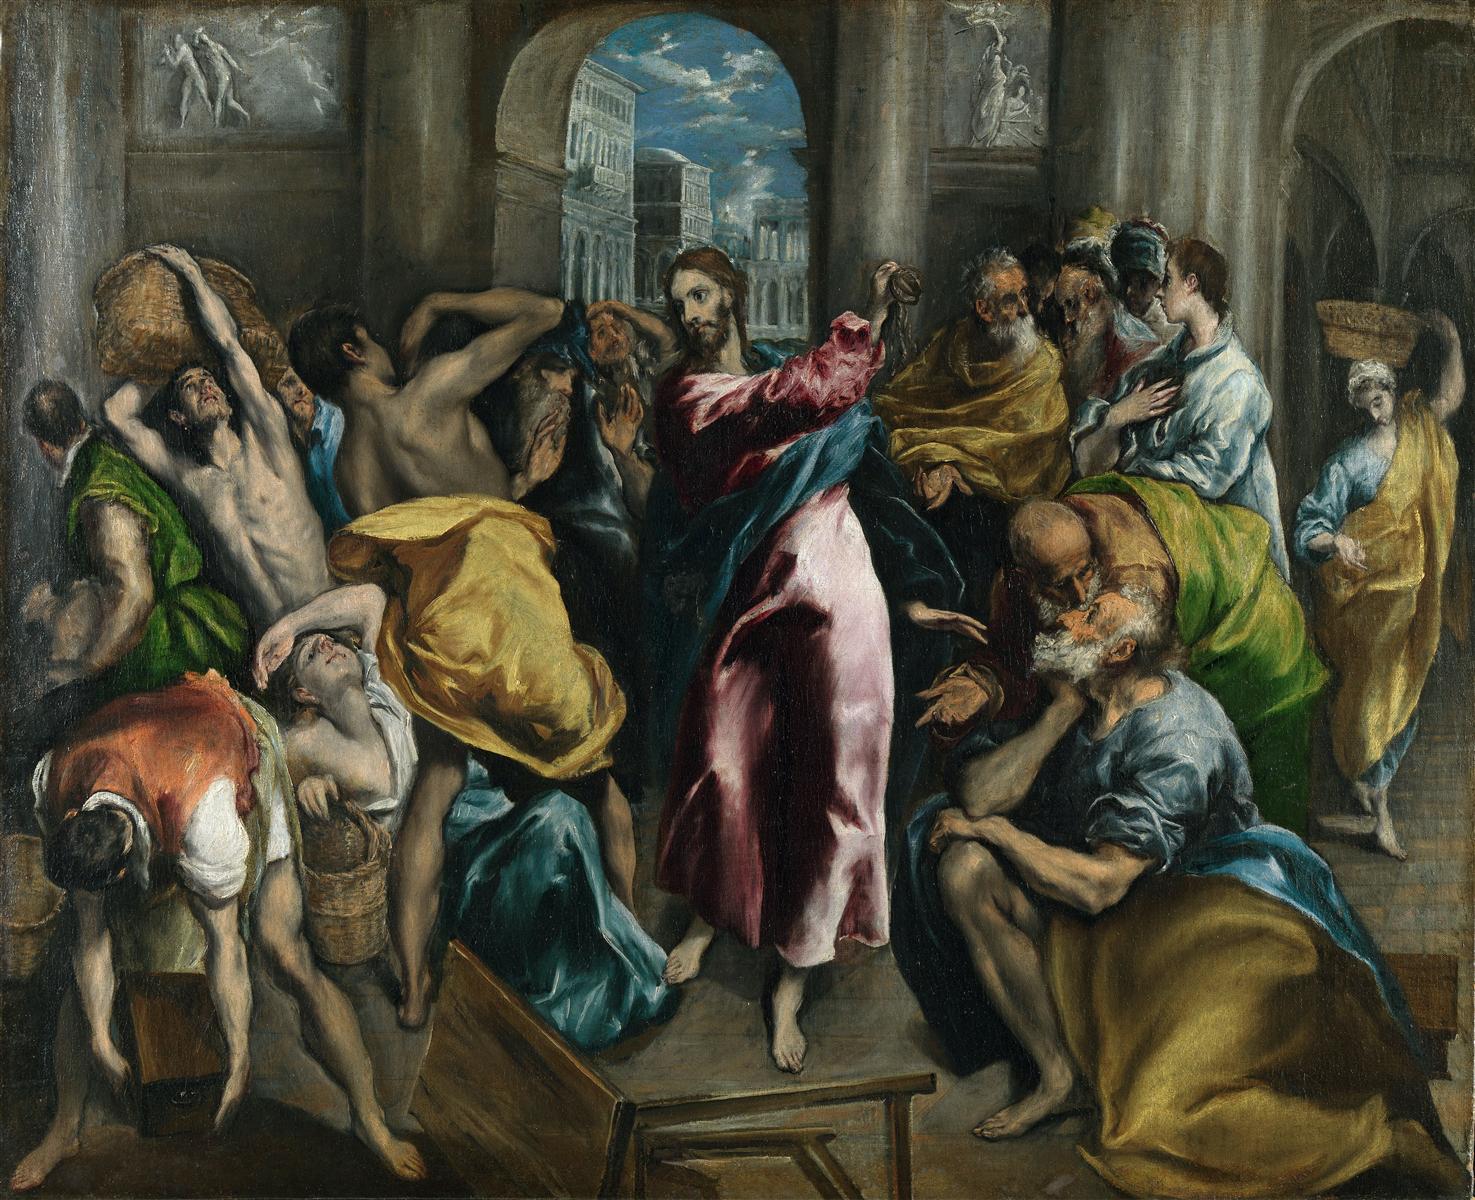 El+Greco-1541-1614 (249).jpg